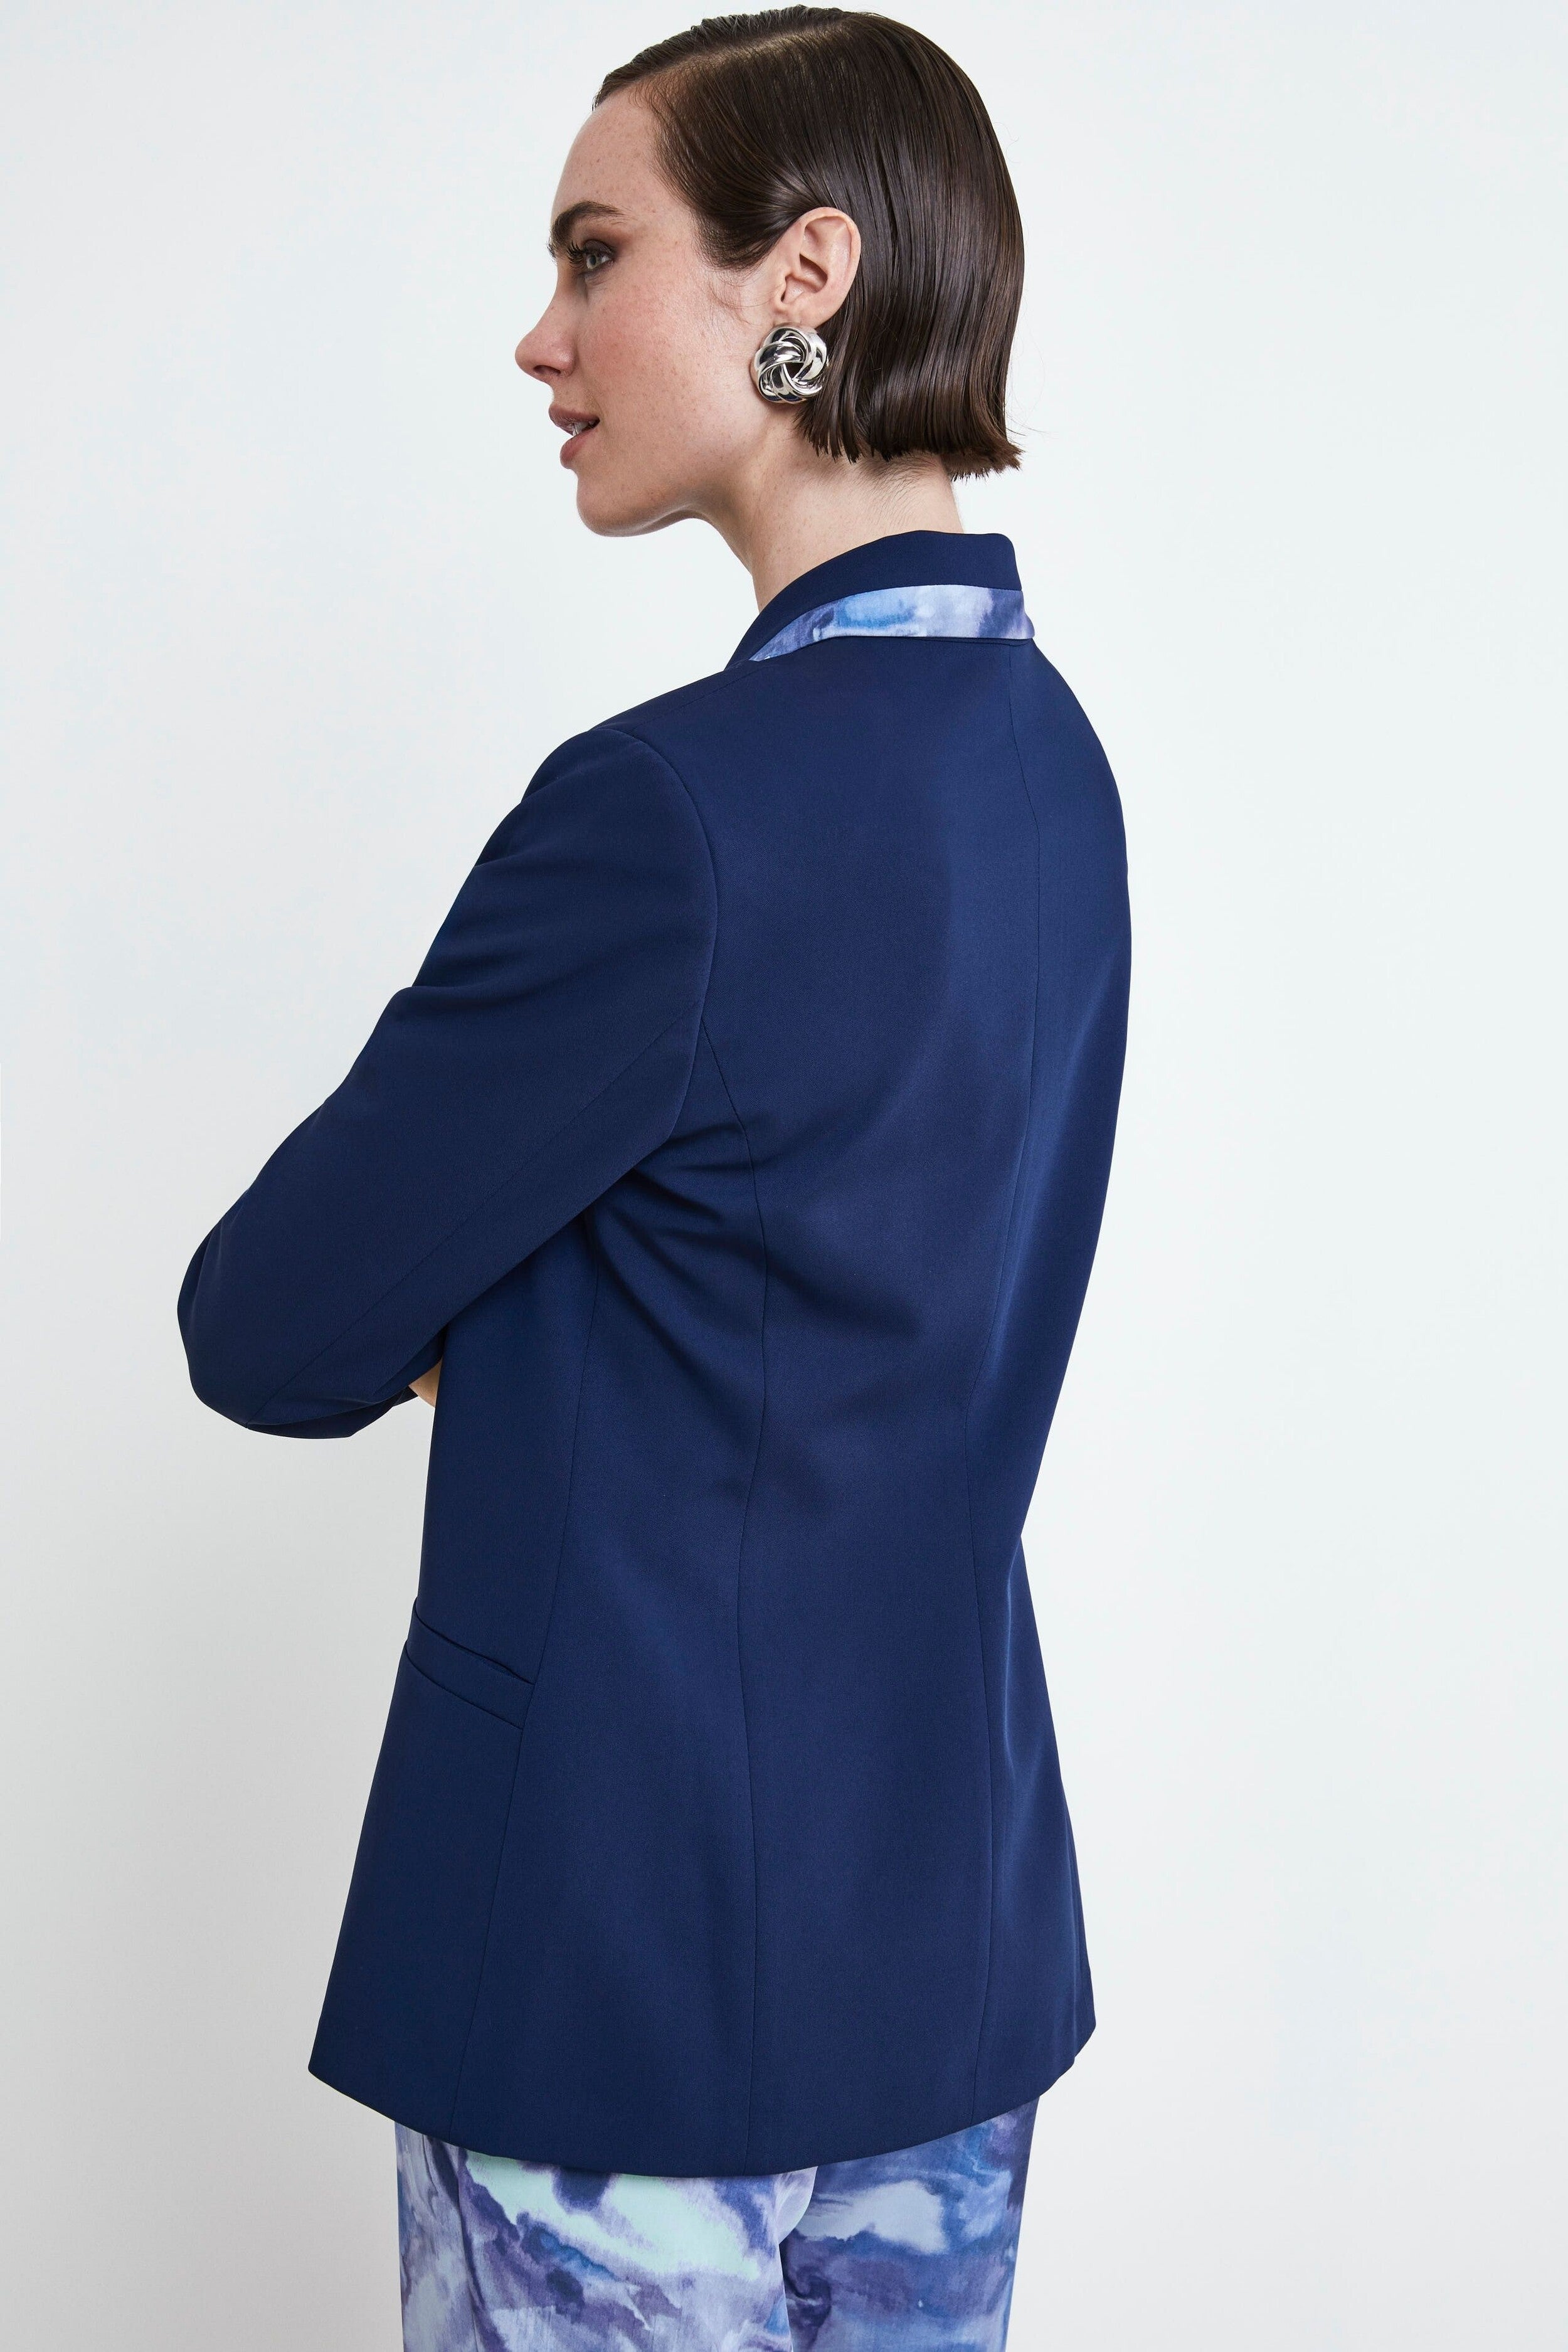 Elegant Jacket with Contrast - DENIM